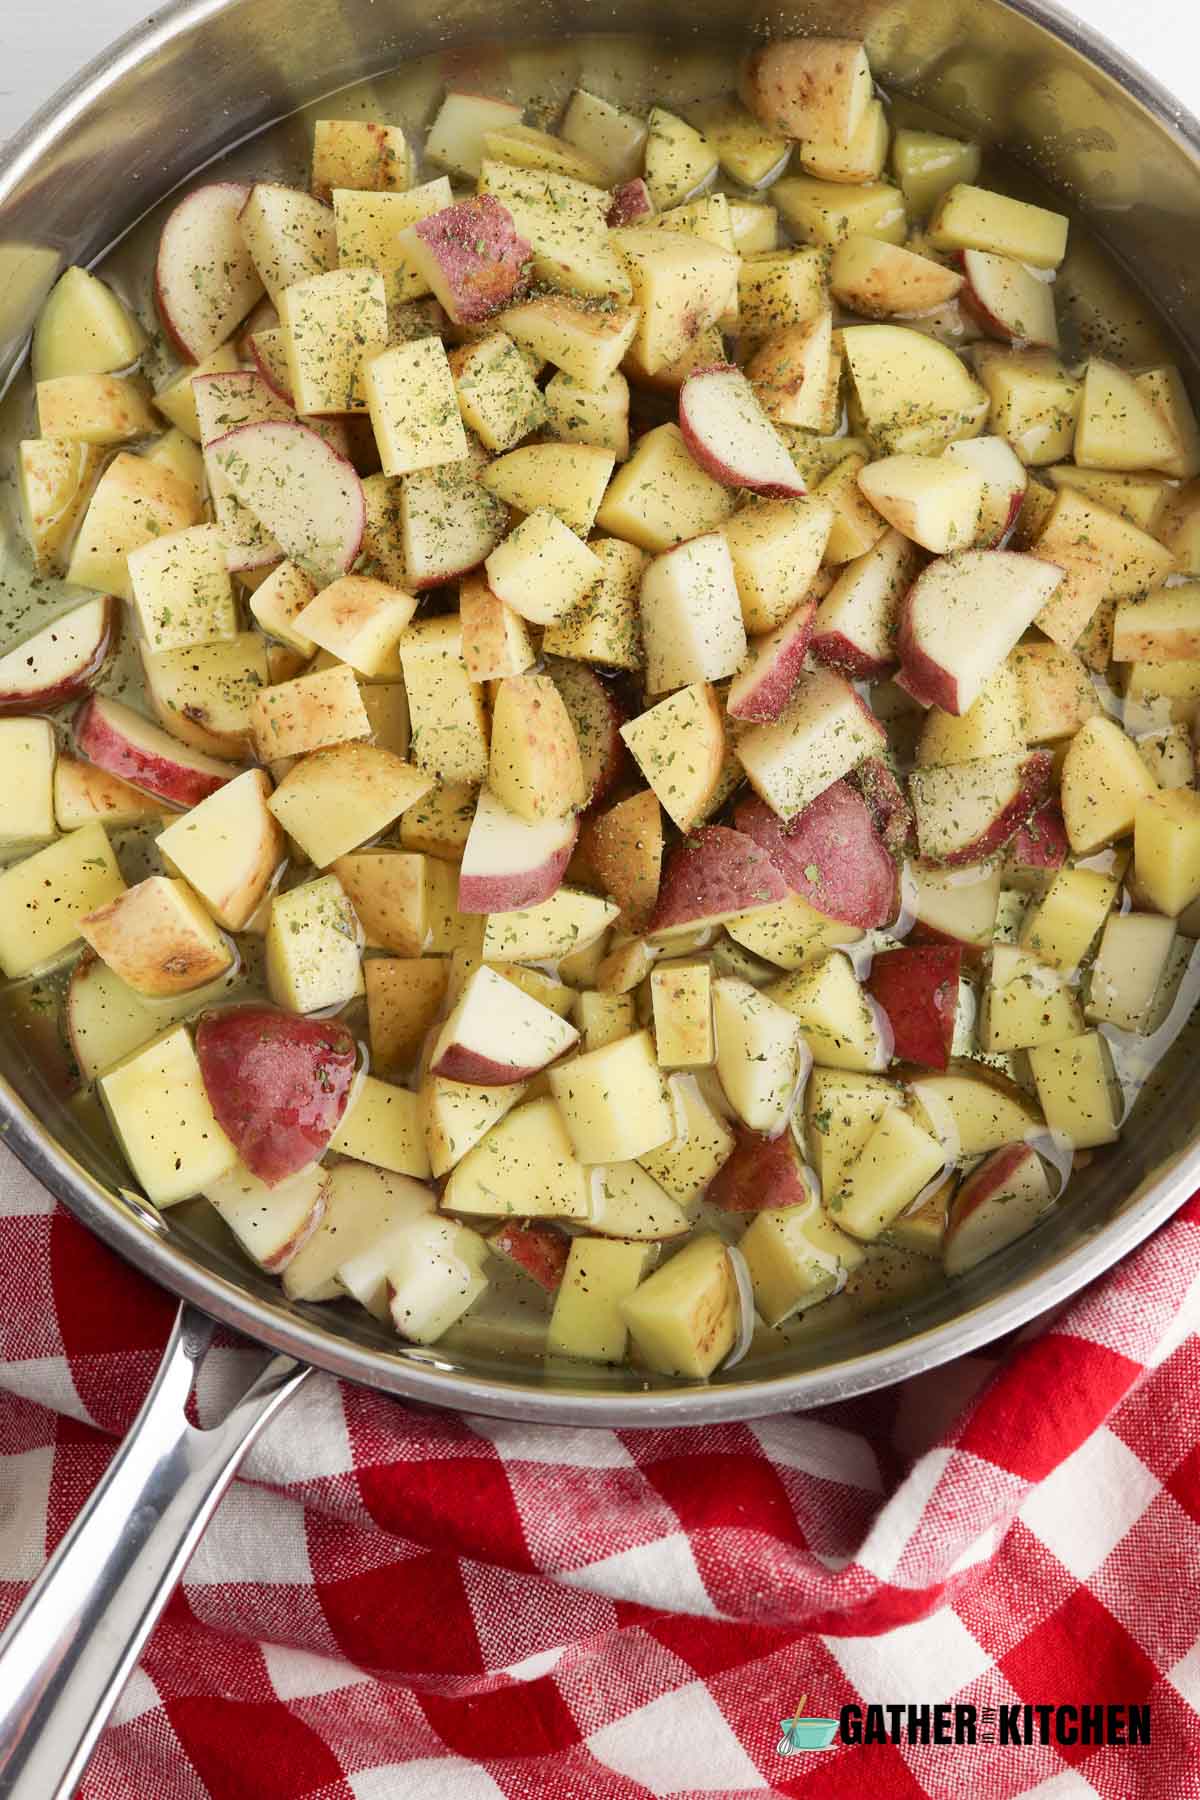 Oil, raw potatoes, and seasoning in pan.